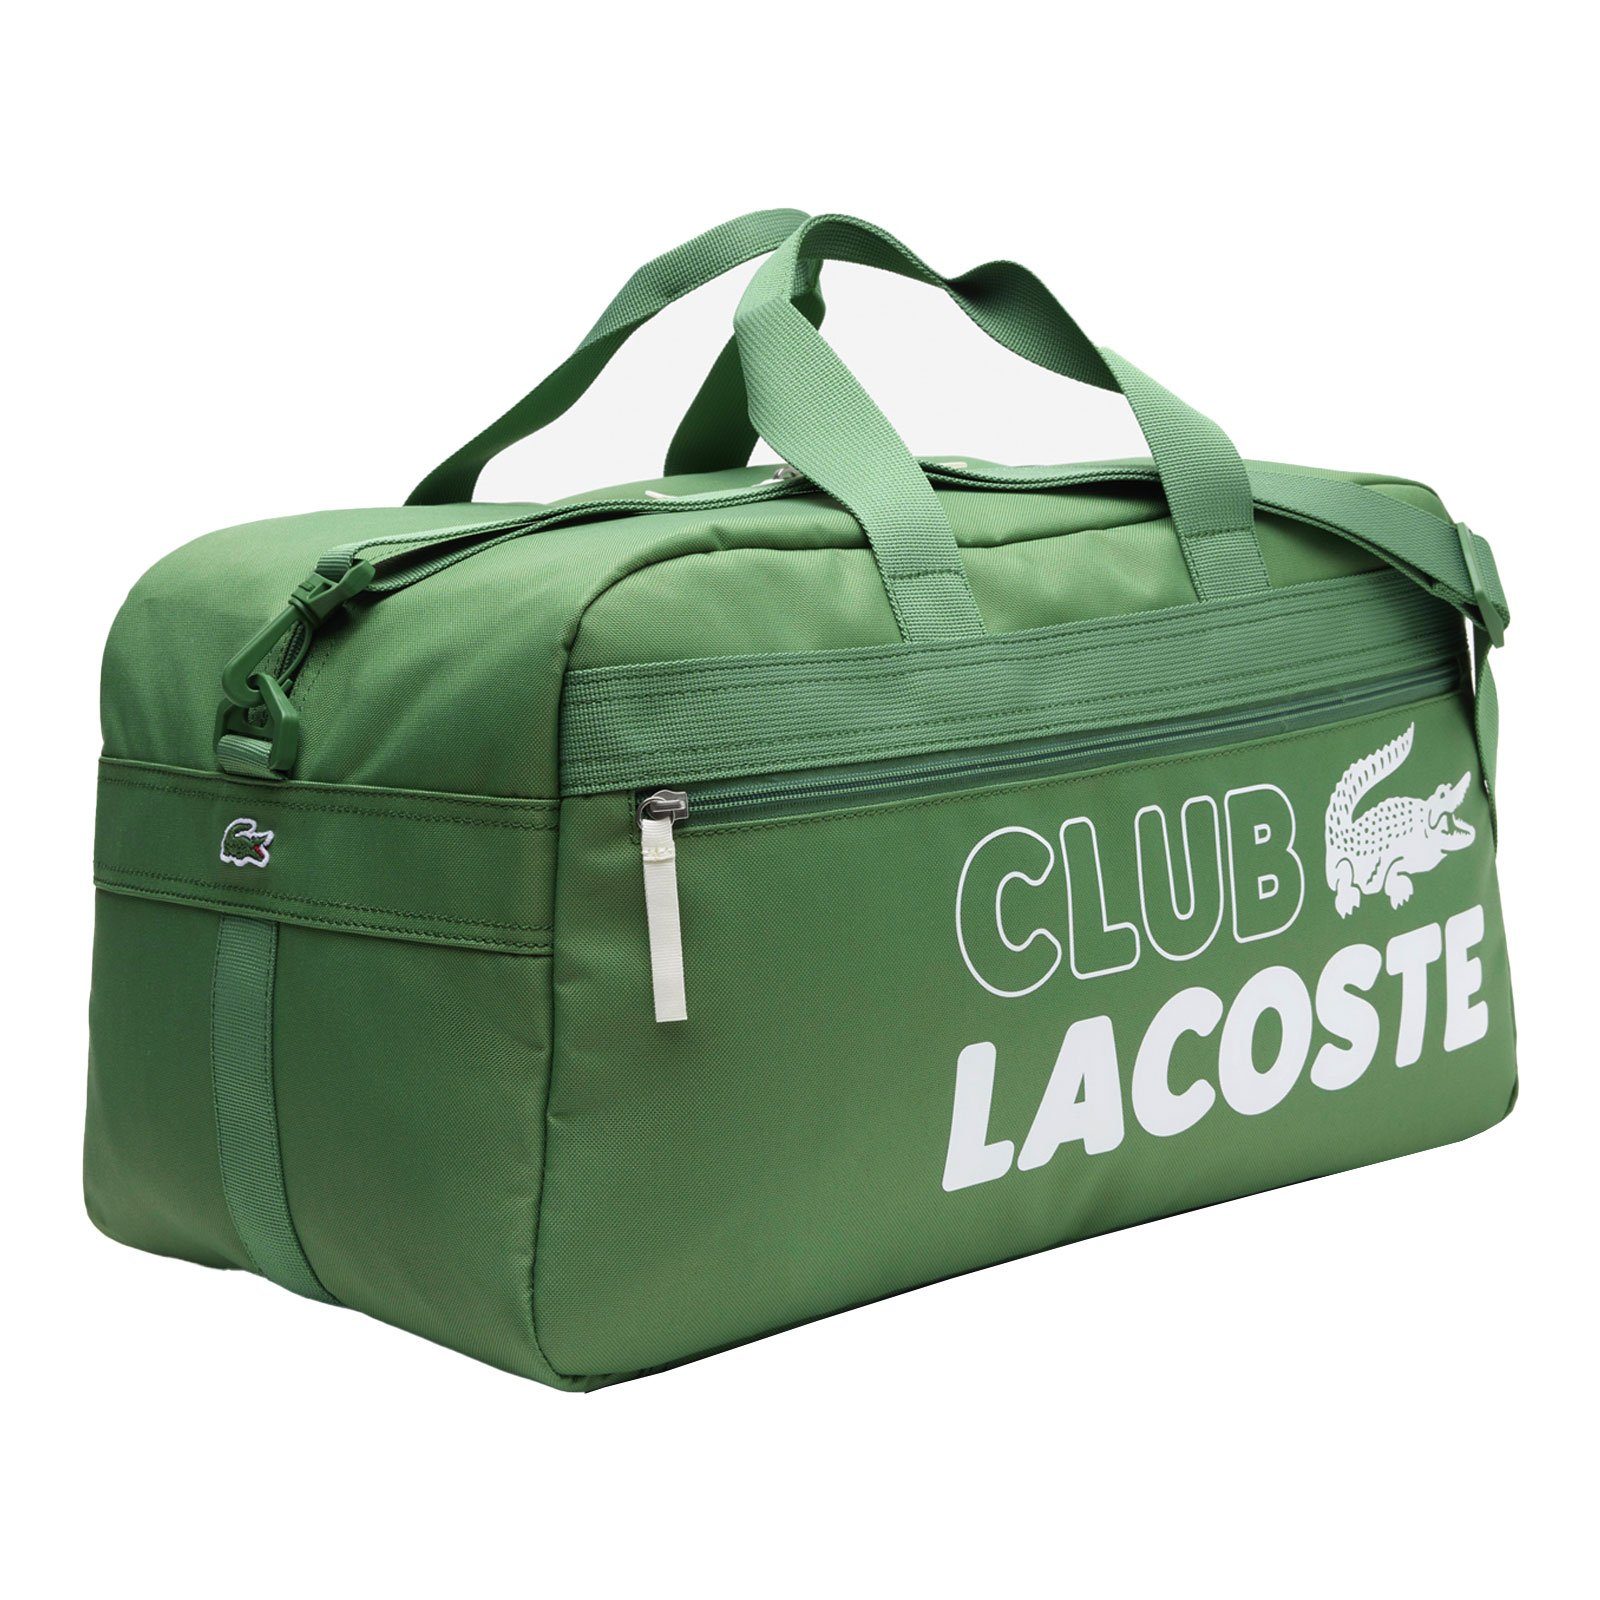 Sporttasche Gym Logo mit Schriftzug Lacoste Bag, auffälligem und